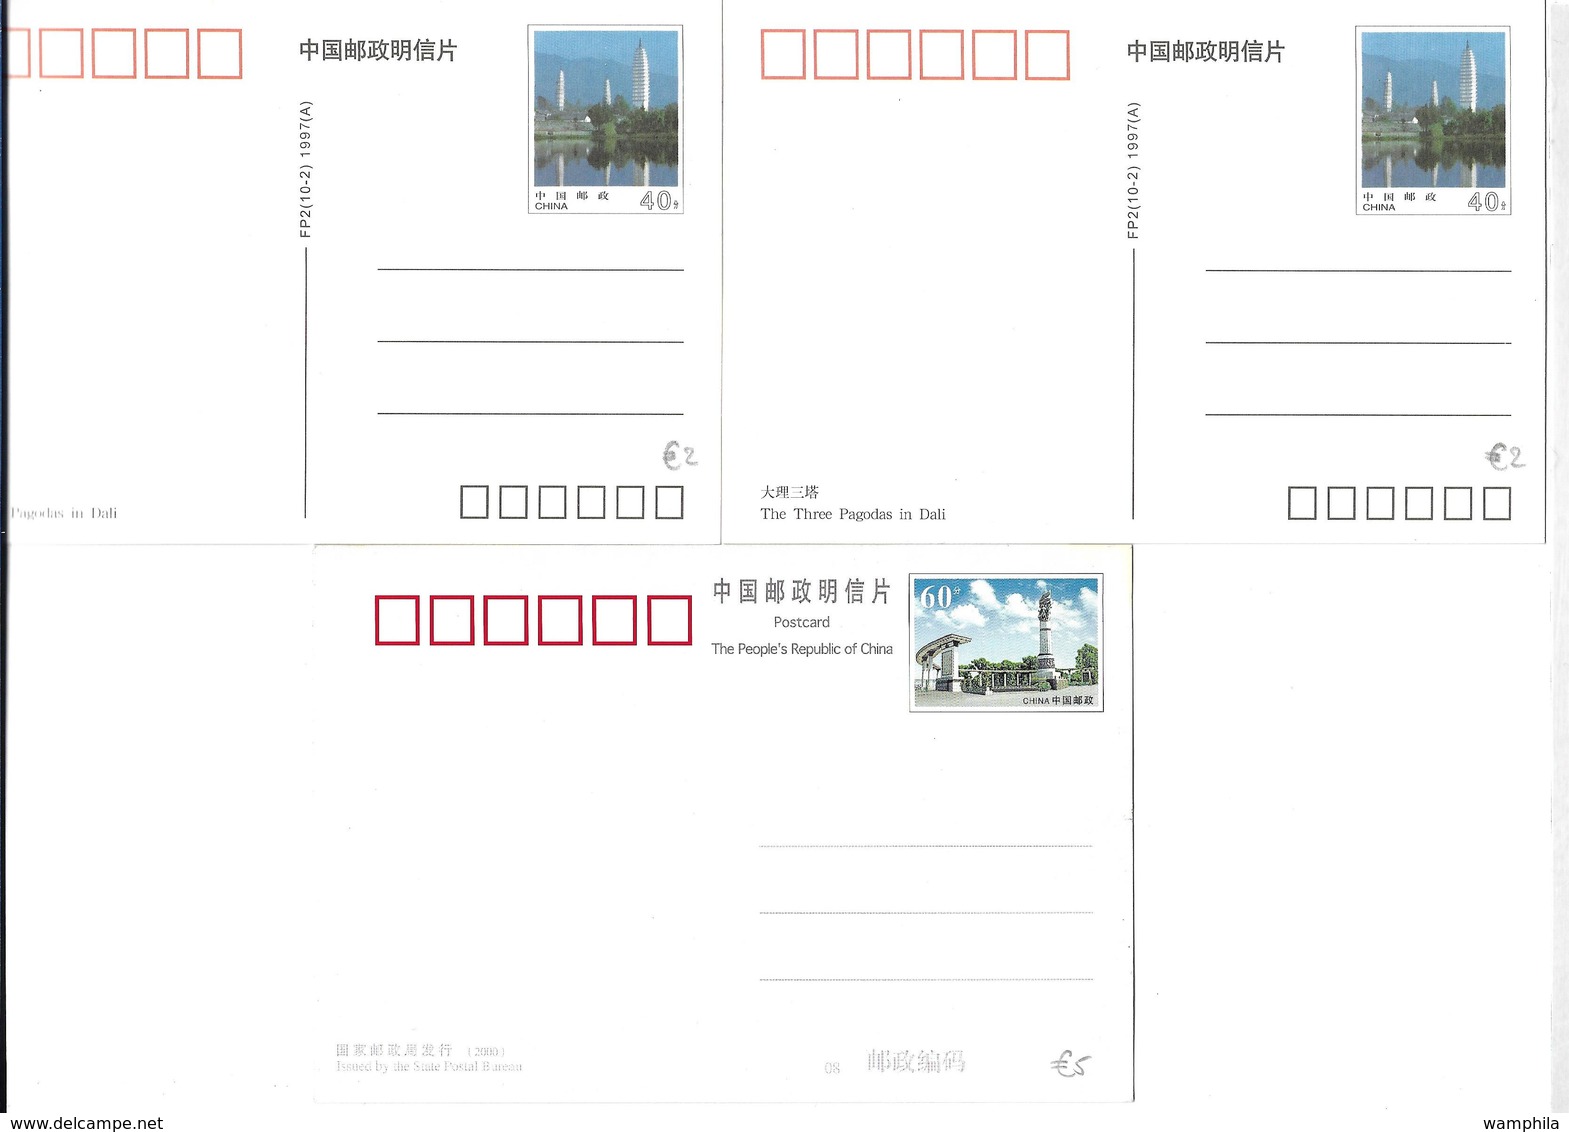 Chine un lot de 17 cartes, entiers postaux (divers thèmes, vues,)